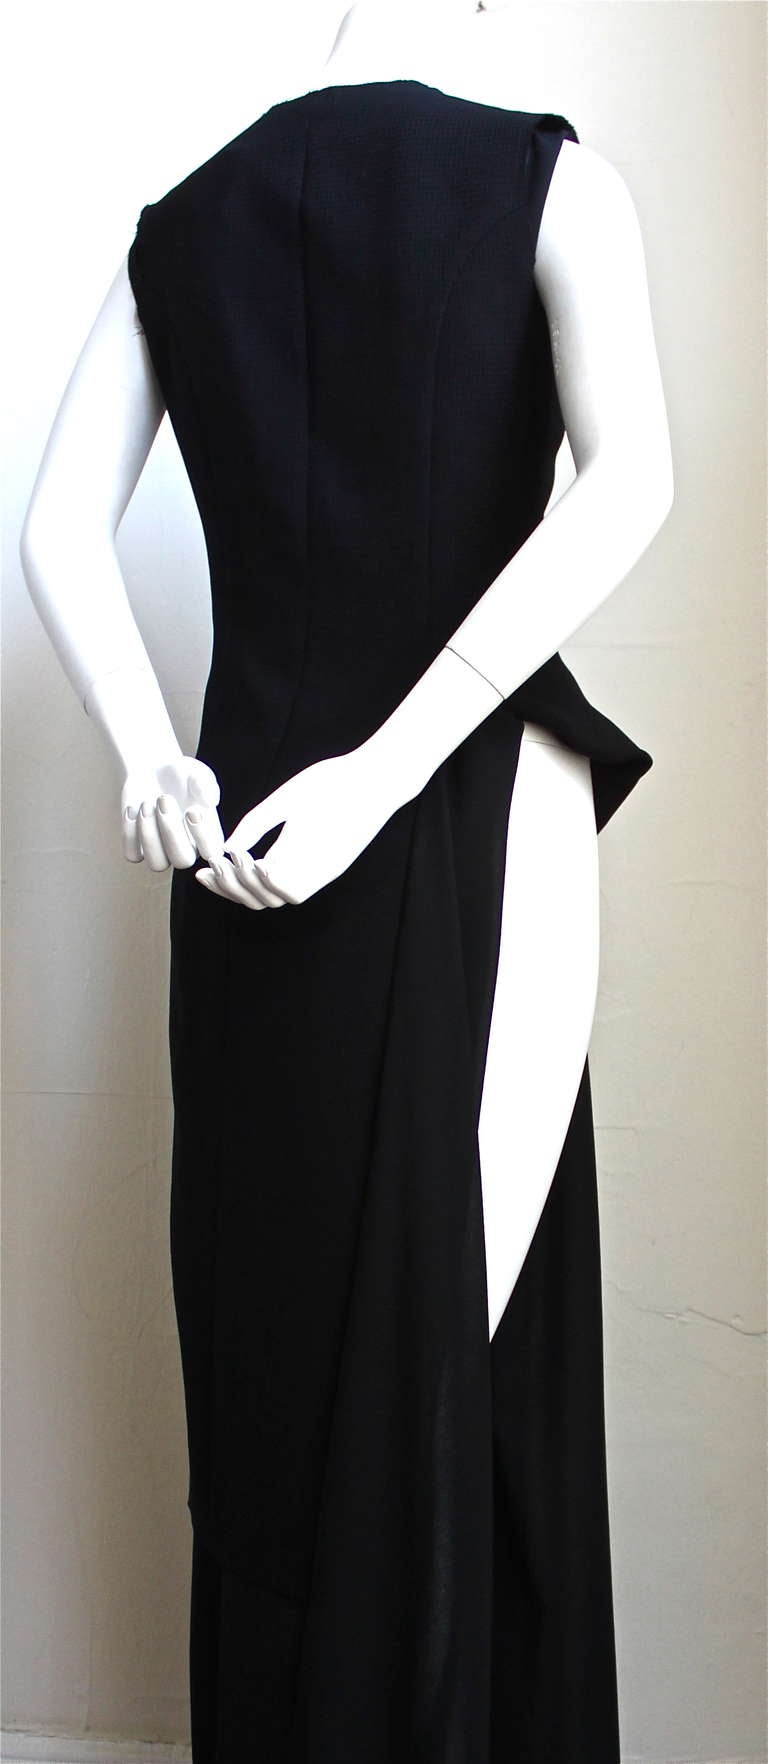 Women's 1998 COMME DES GARCONS black crepe dress with cut out